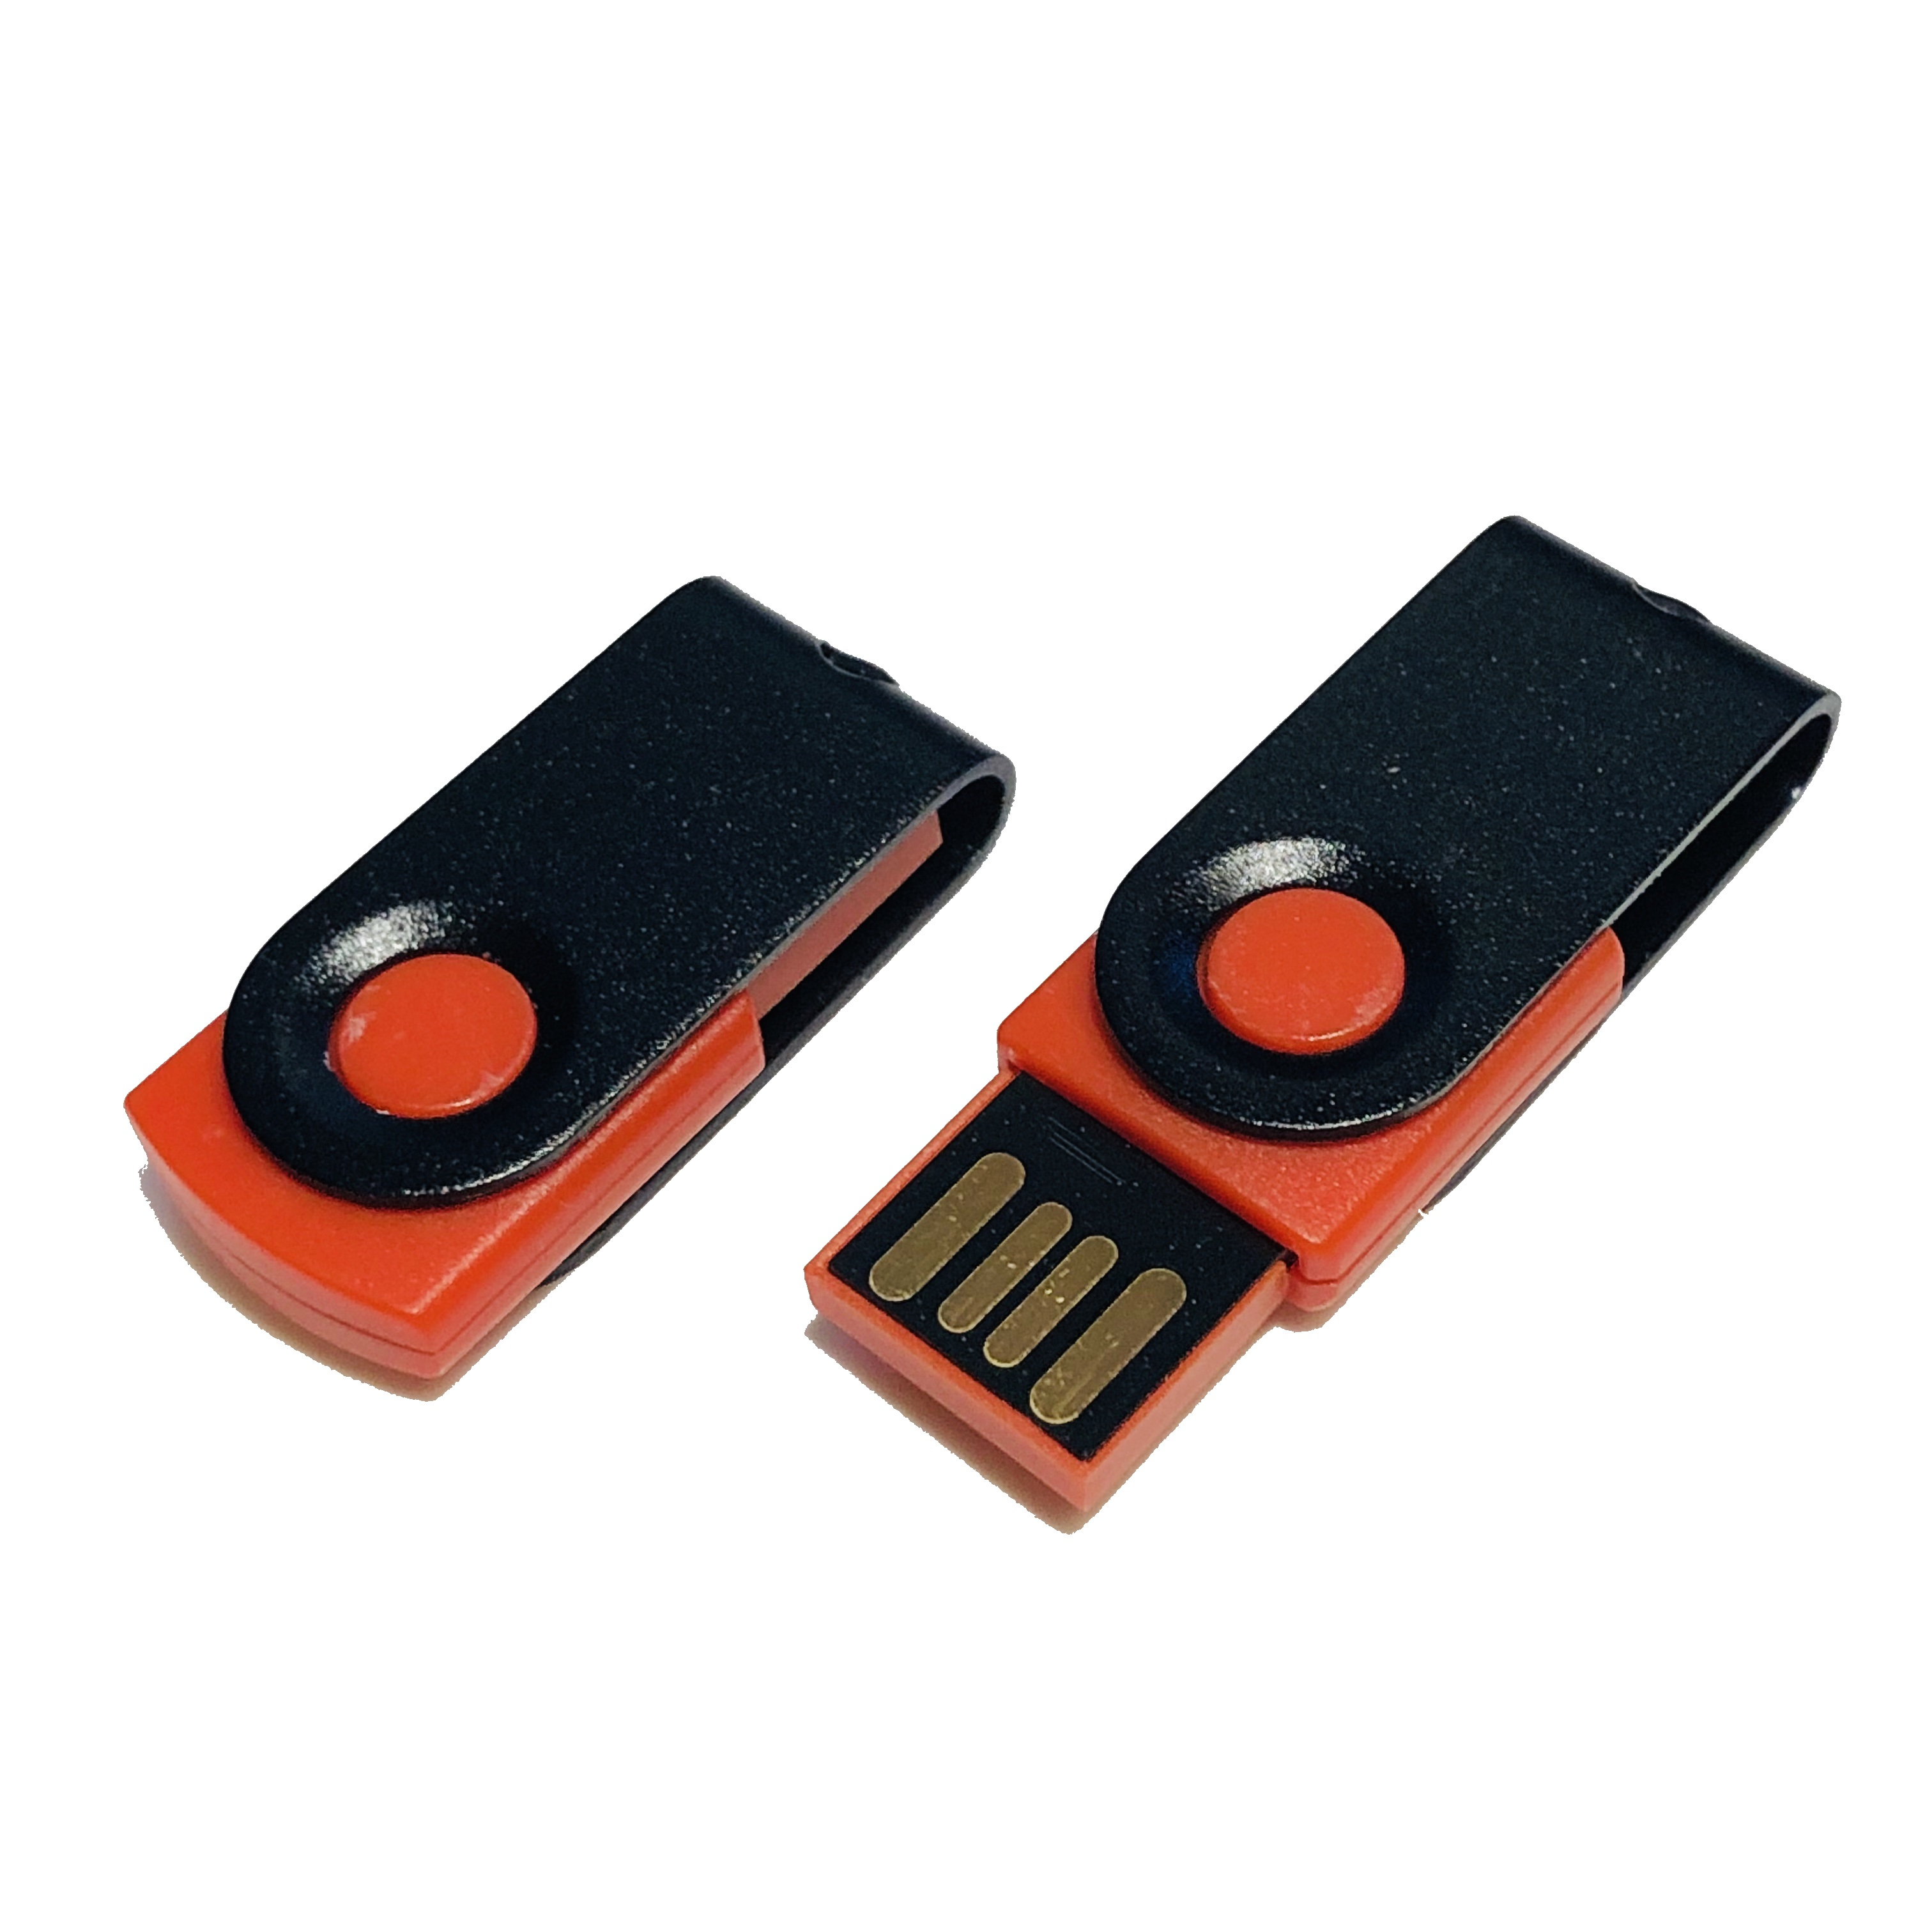 ® 16 USB USB-Stick GB) MINI-SWIVEL (Rot-Schwarz, GERMANY